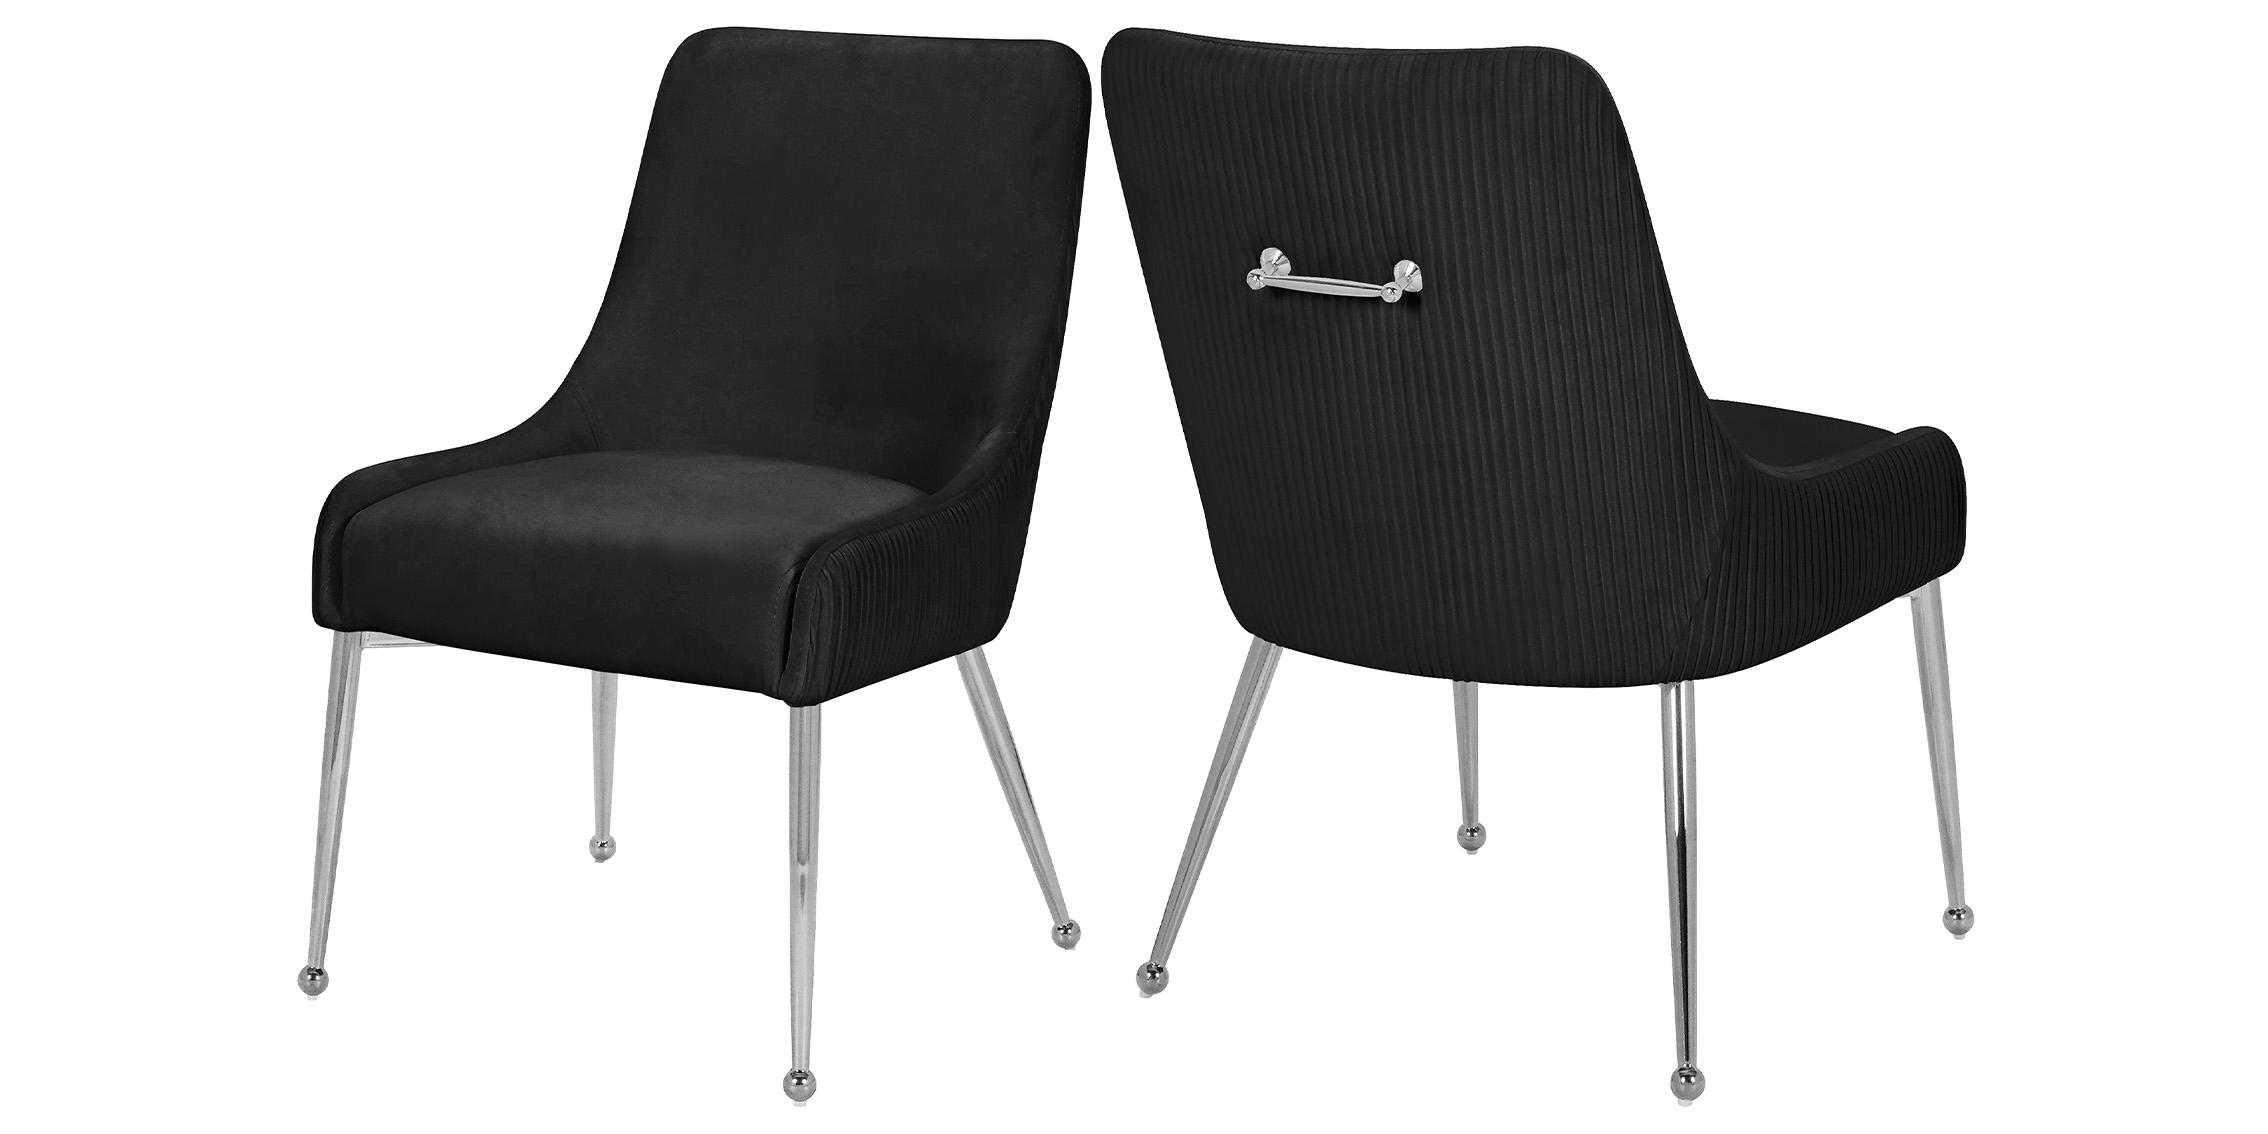 Contemporary, Modern Dining Chair Set ACE 856Black 856Black in Chrome, Black Velvet